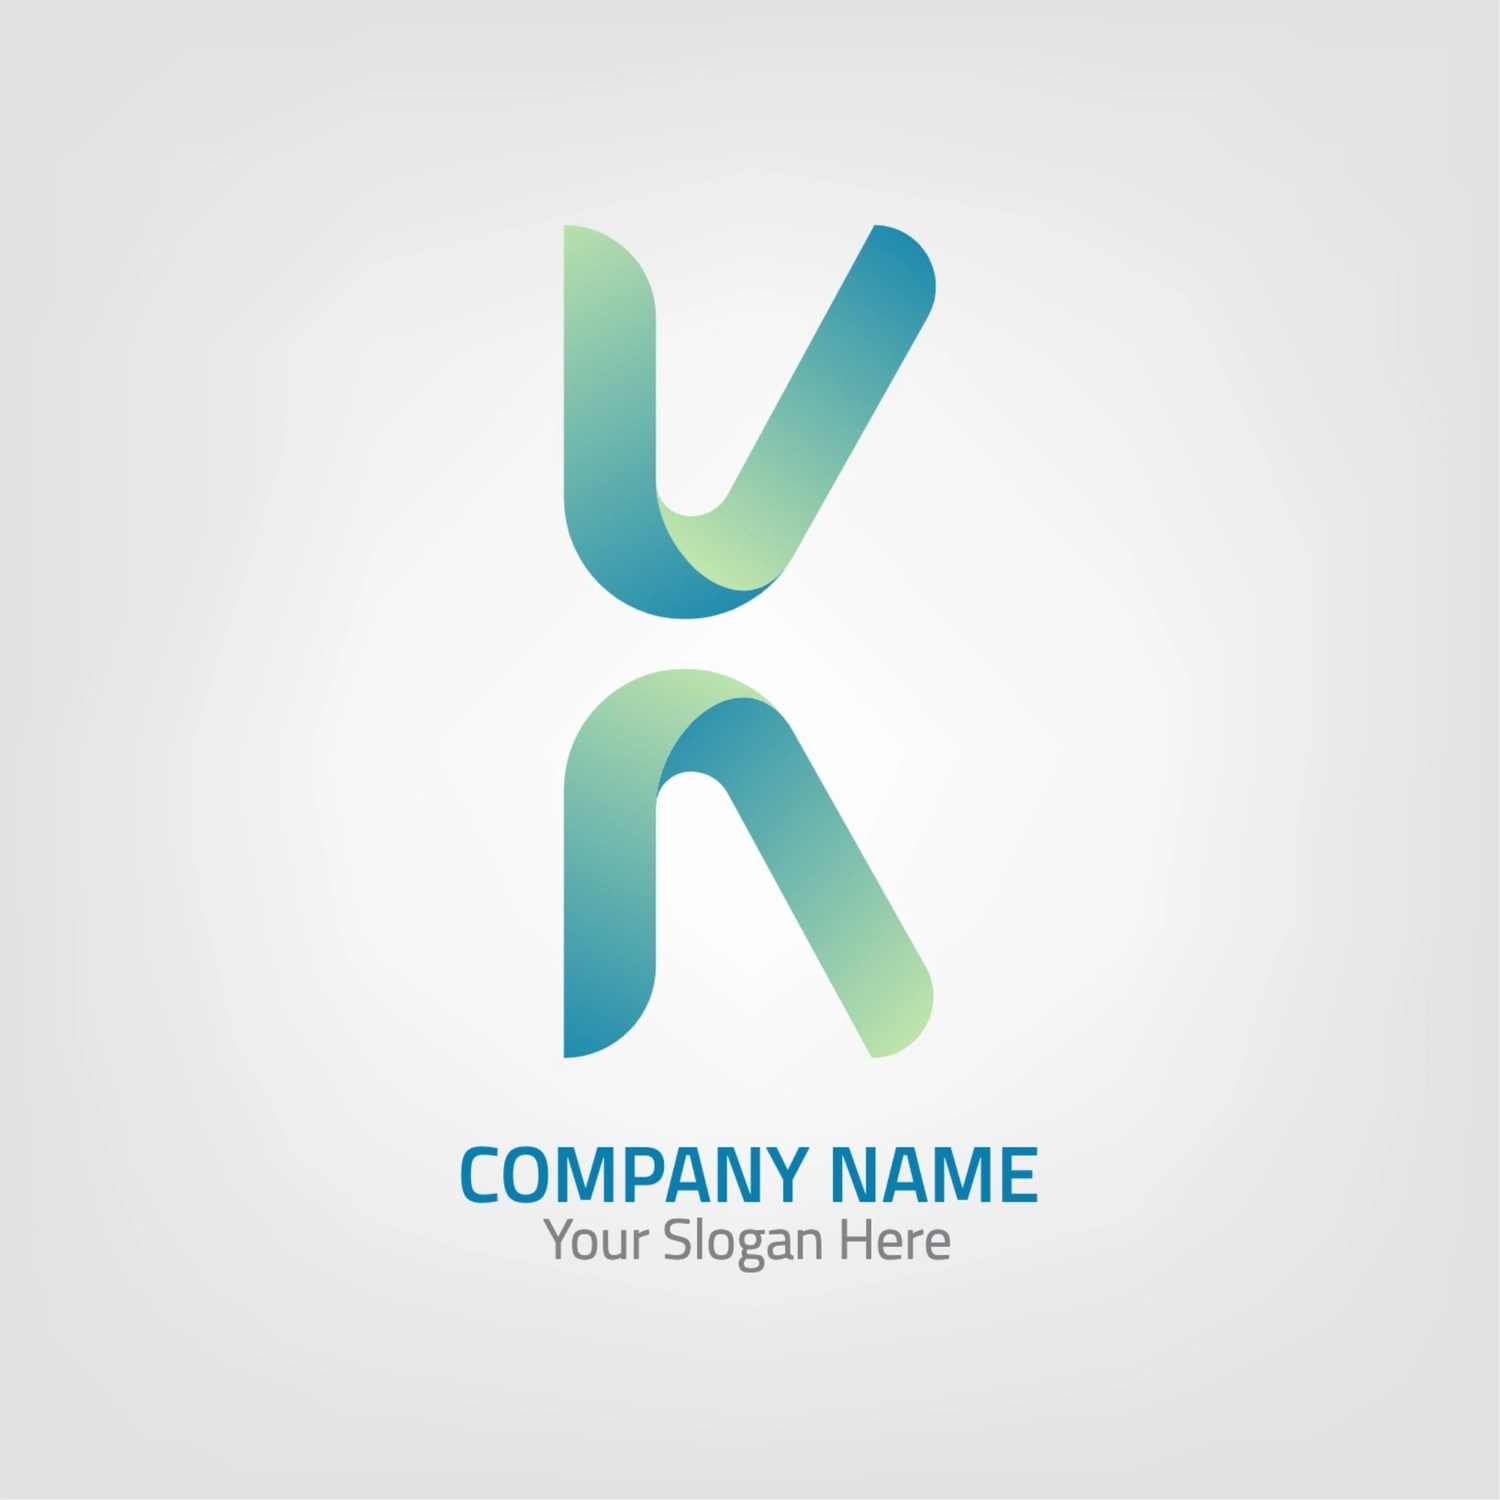 Kのロゴ, イニシャル, 作成, デザイン, ロゴテンプレート